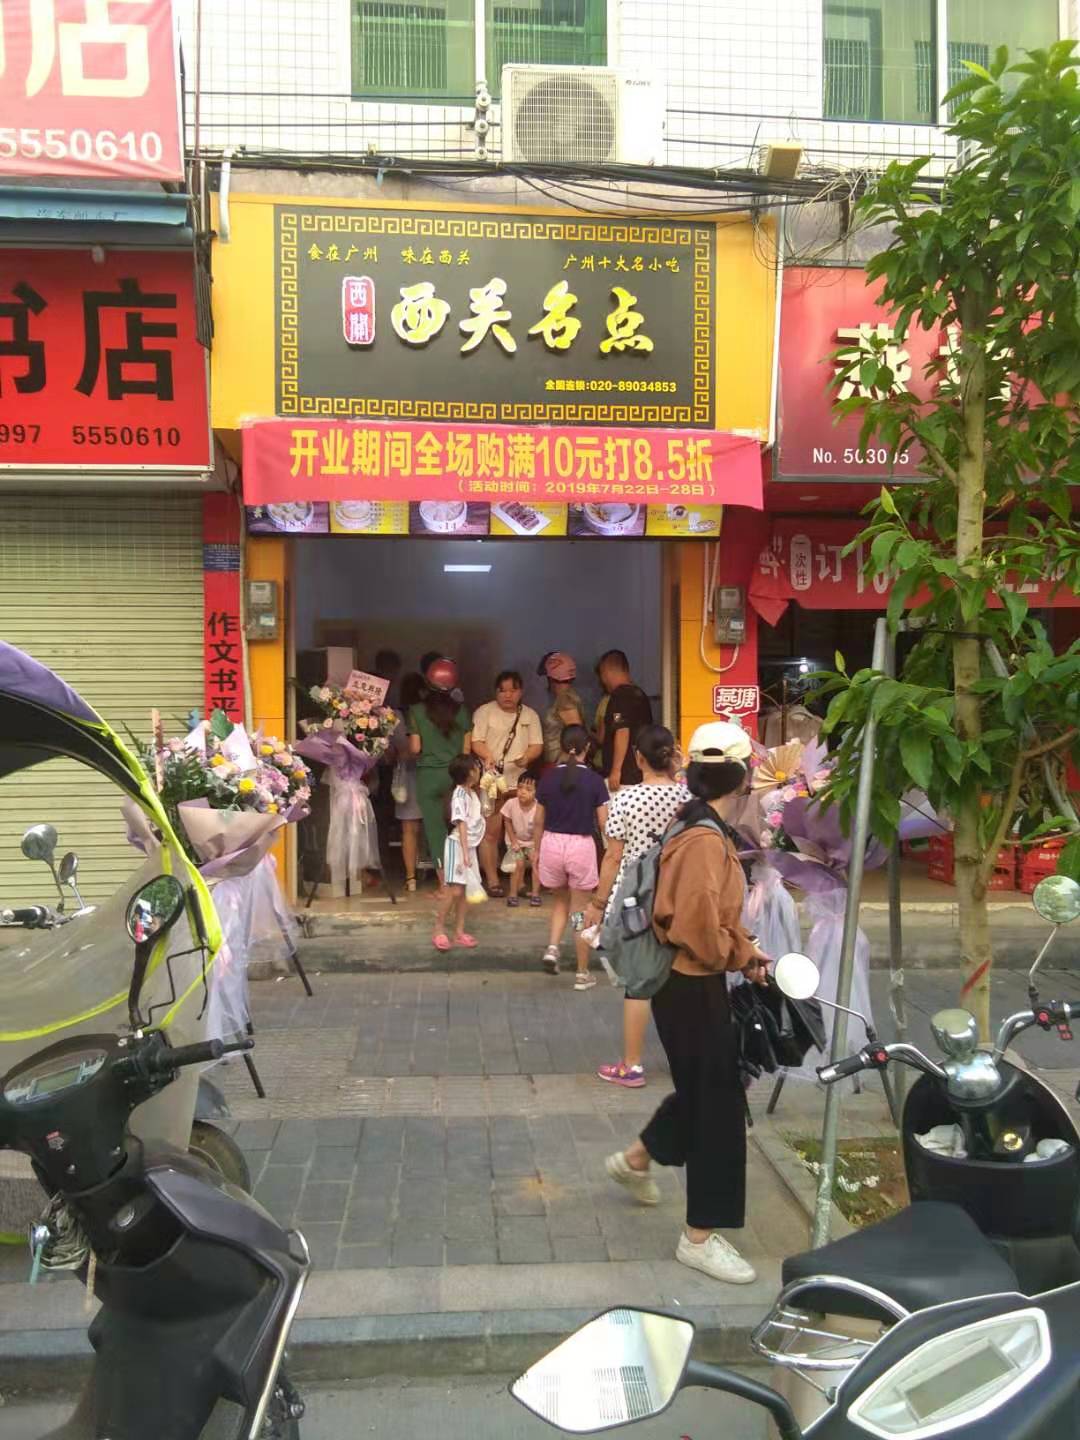 热烈祝贺湛江吴川的西关名点店成功开业